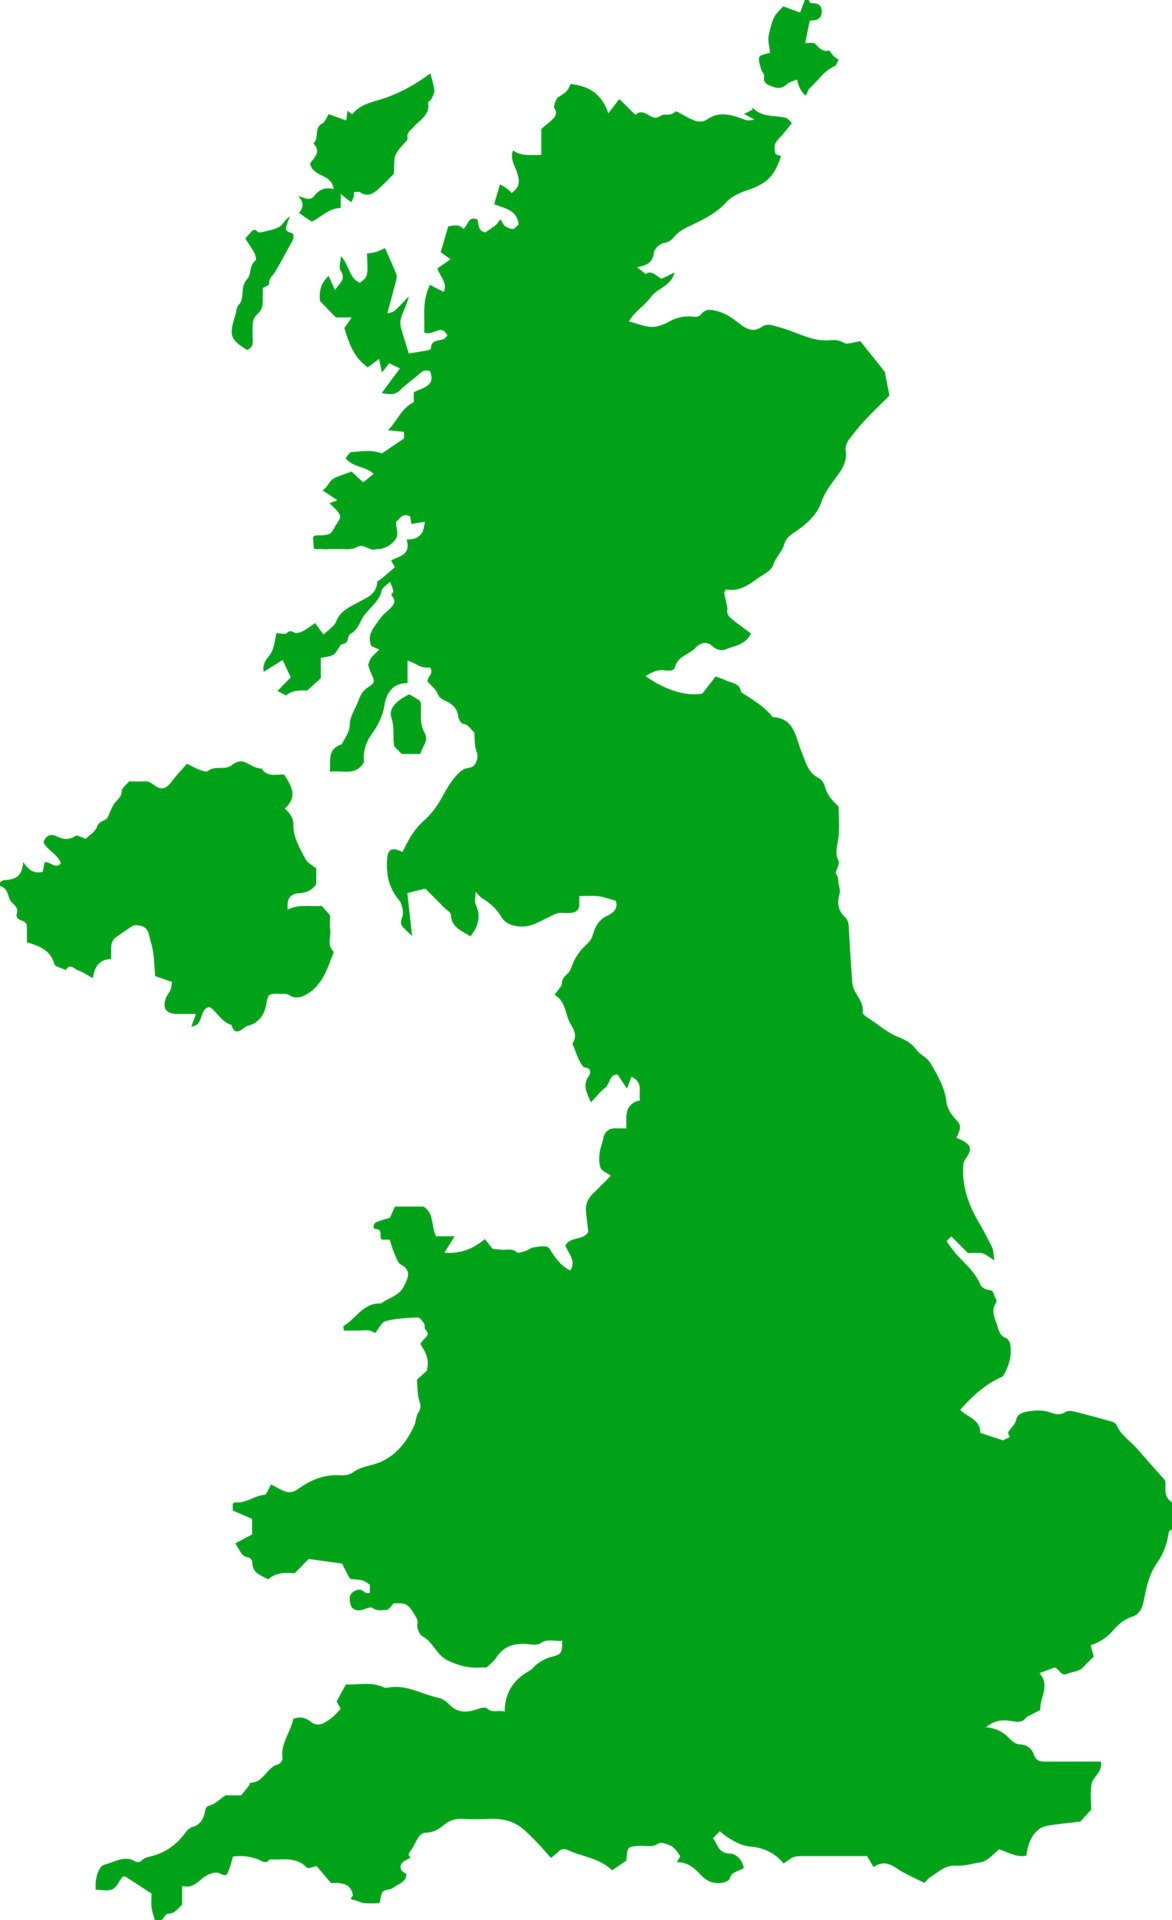 green-colored-united-kingdom-outline-map-political-uk-map-illustration-vector.jpg